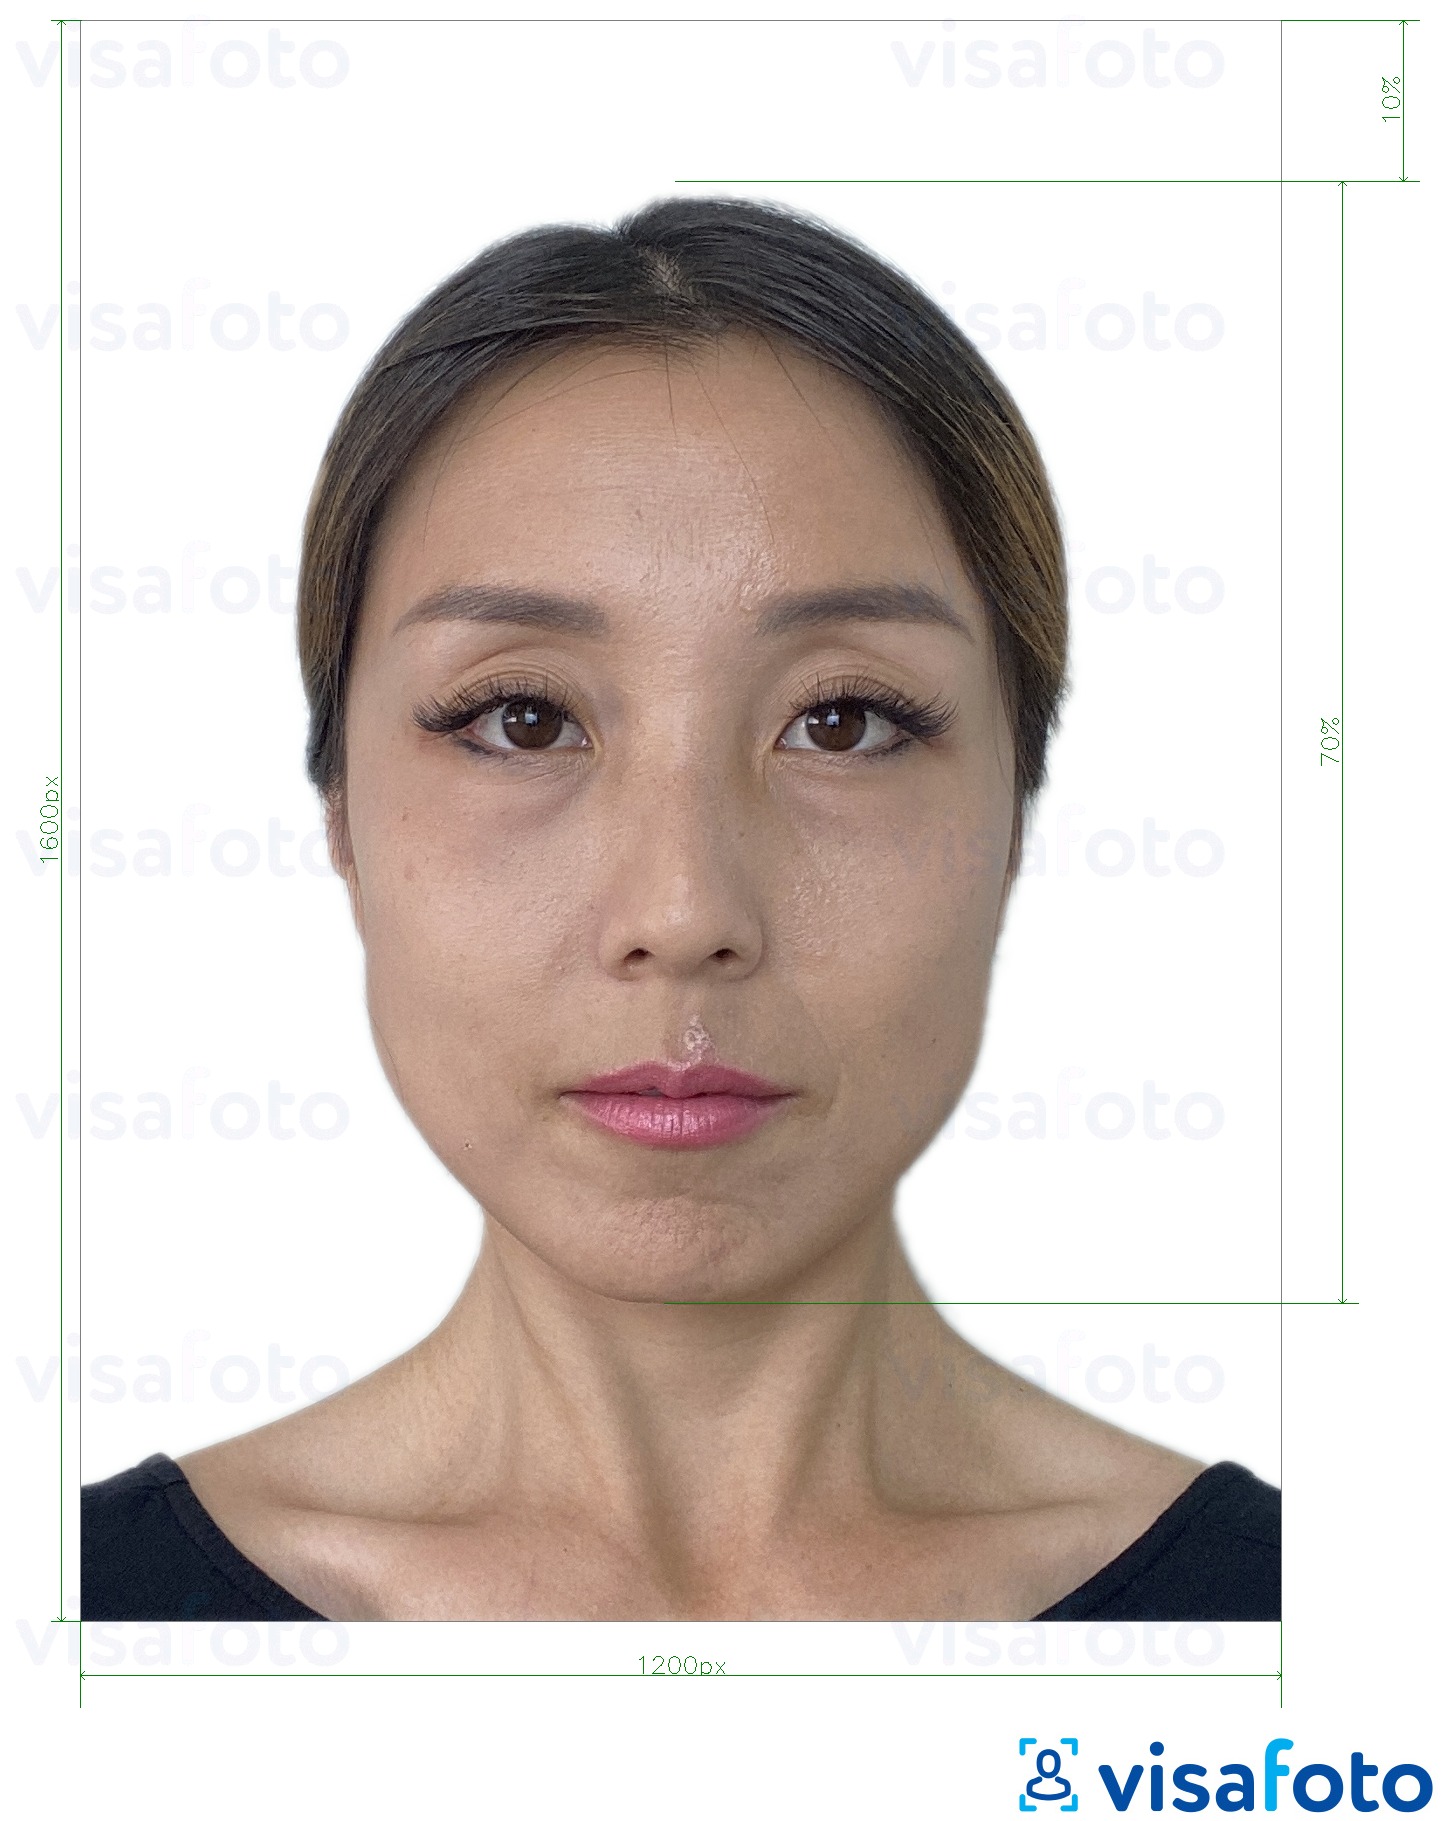 דוגמא לתמונה על הונג קונג באינטרנט דרכון אלקטרוני 1200x1600 פיקסלים בעלת מידות מדויקות